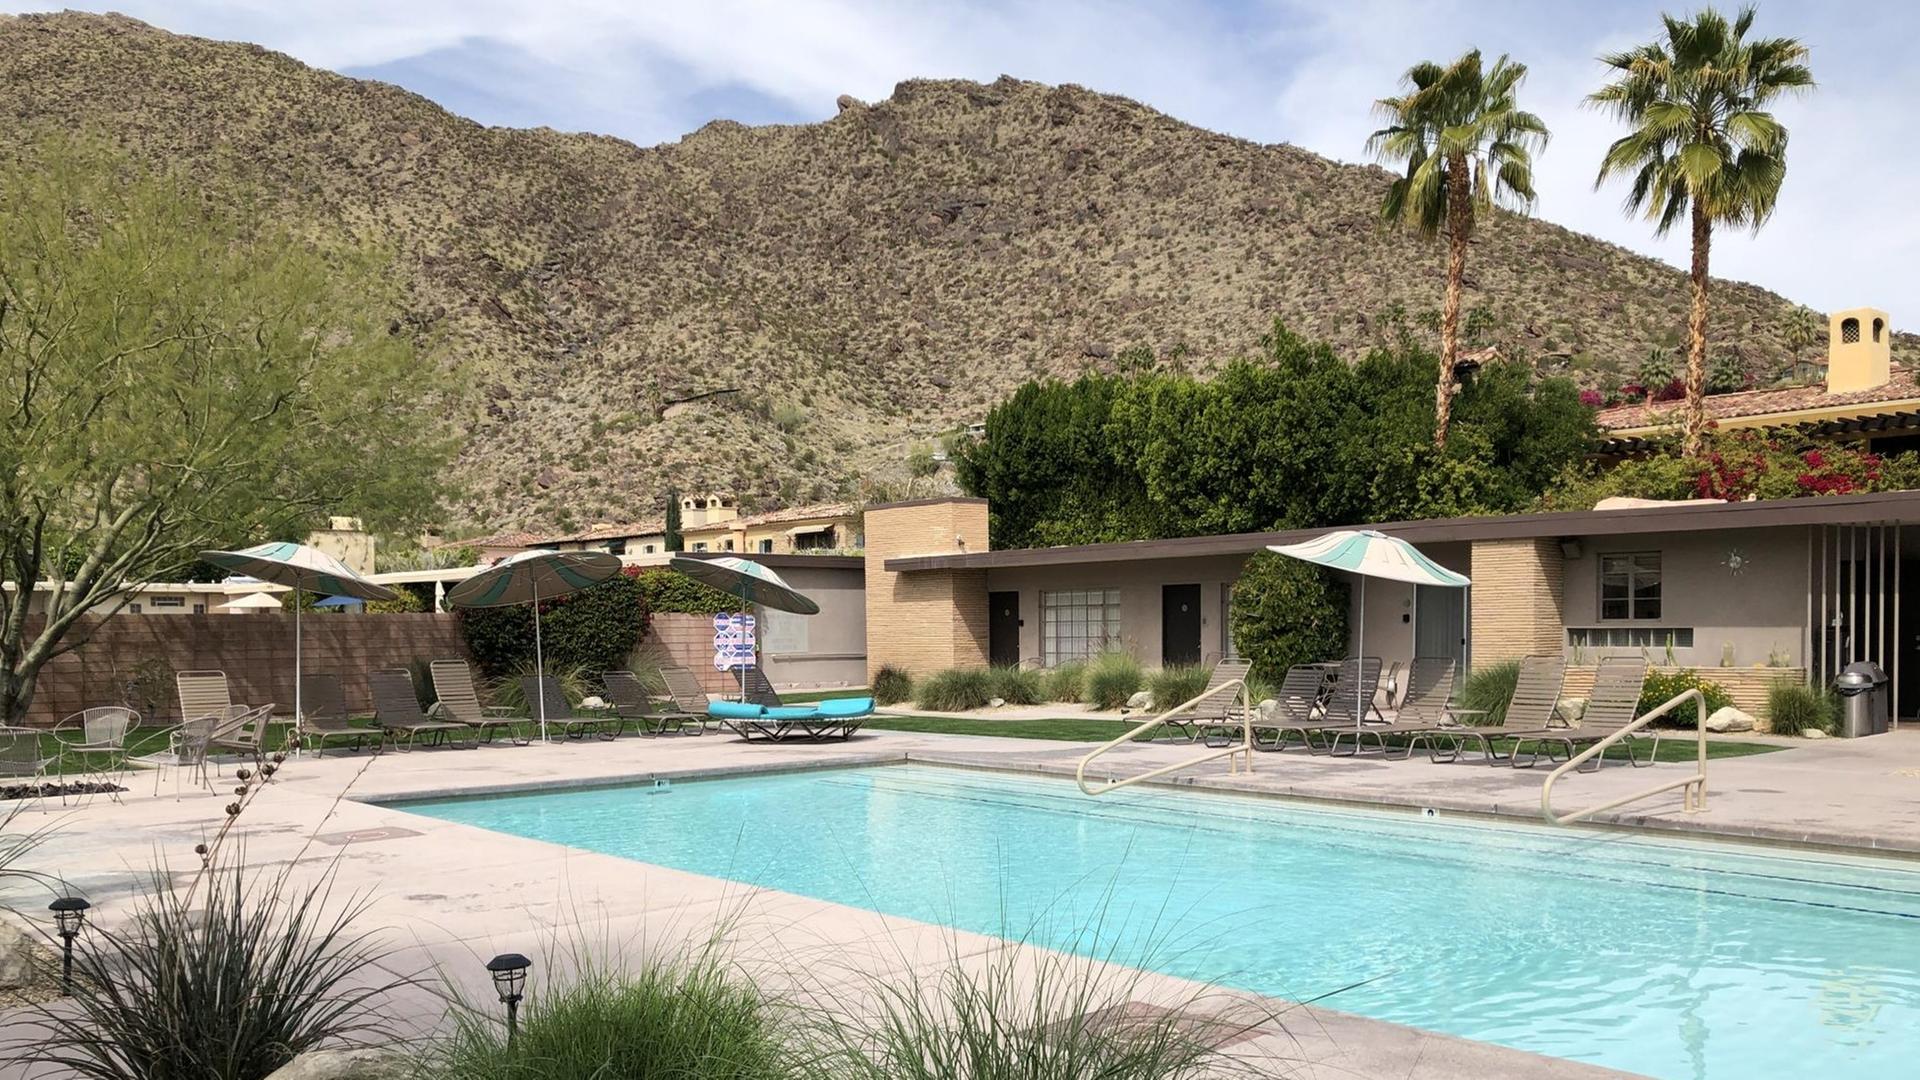 Ein Swimming Pool, umgeben von Architektur im internationalen Stil, vor der imposanten Kulisse eines Wüstengebirges.